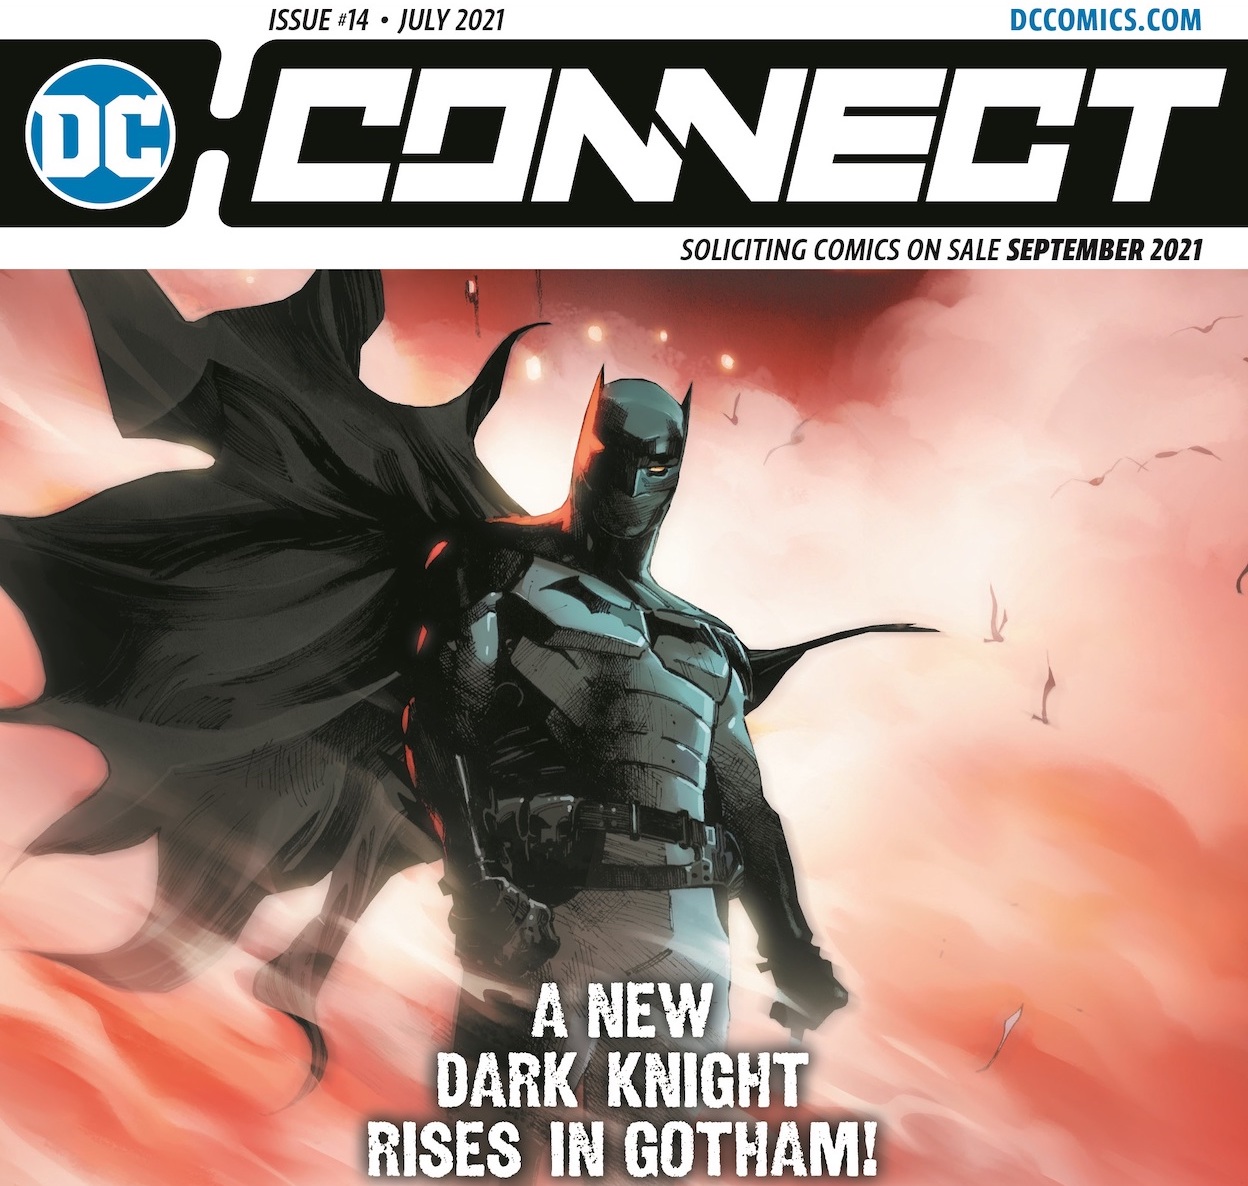 DC Comics sends 'DC Connect' to comic shops